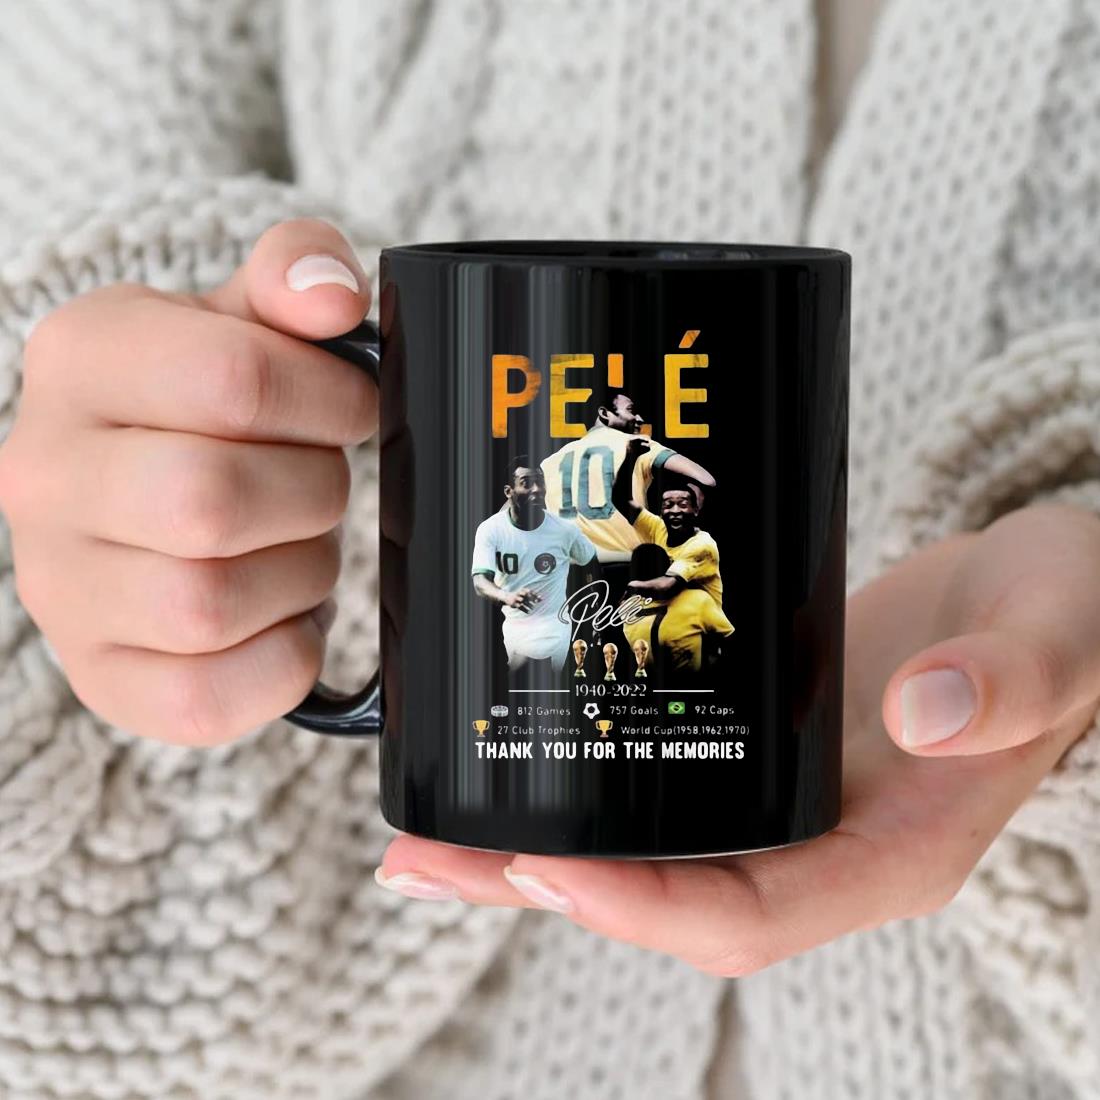 Pele 1940-2022 812 Games 757 Goals Thank You For The Memories Signature Mug